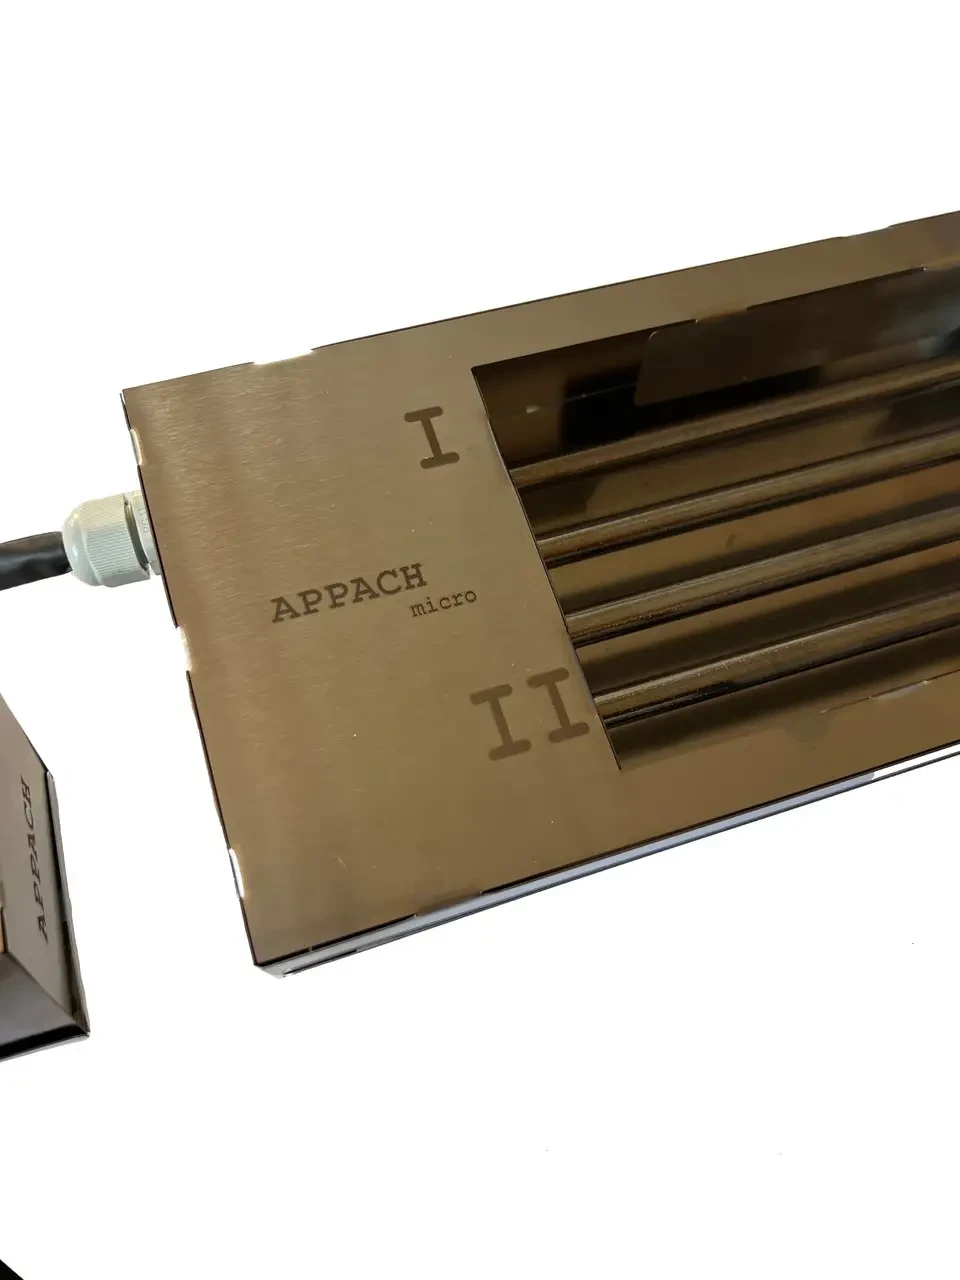 Електрична плита APPACH MICRO для швидкого розпалювання вугілля: компактність та потужність в одному пристрої